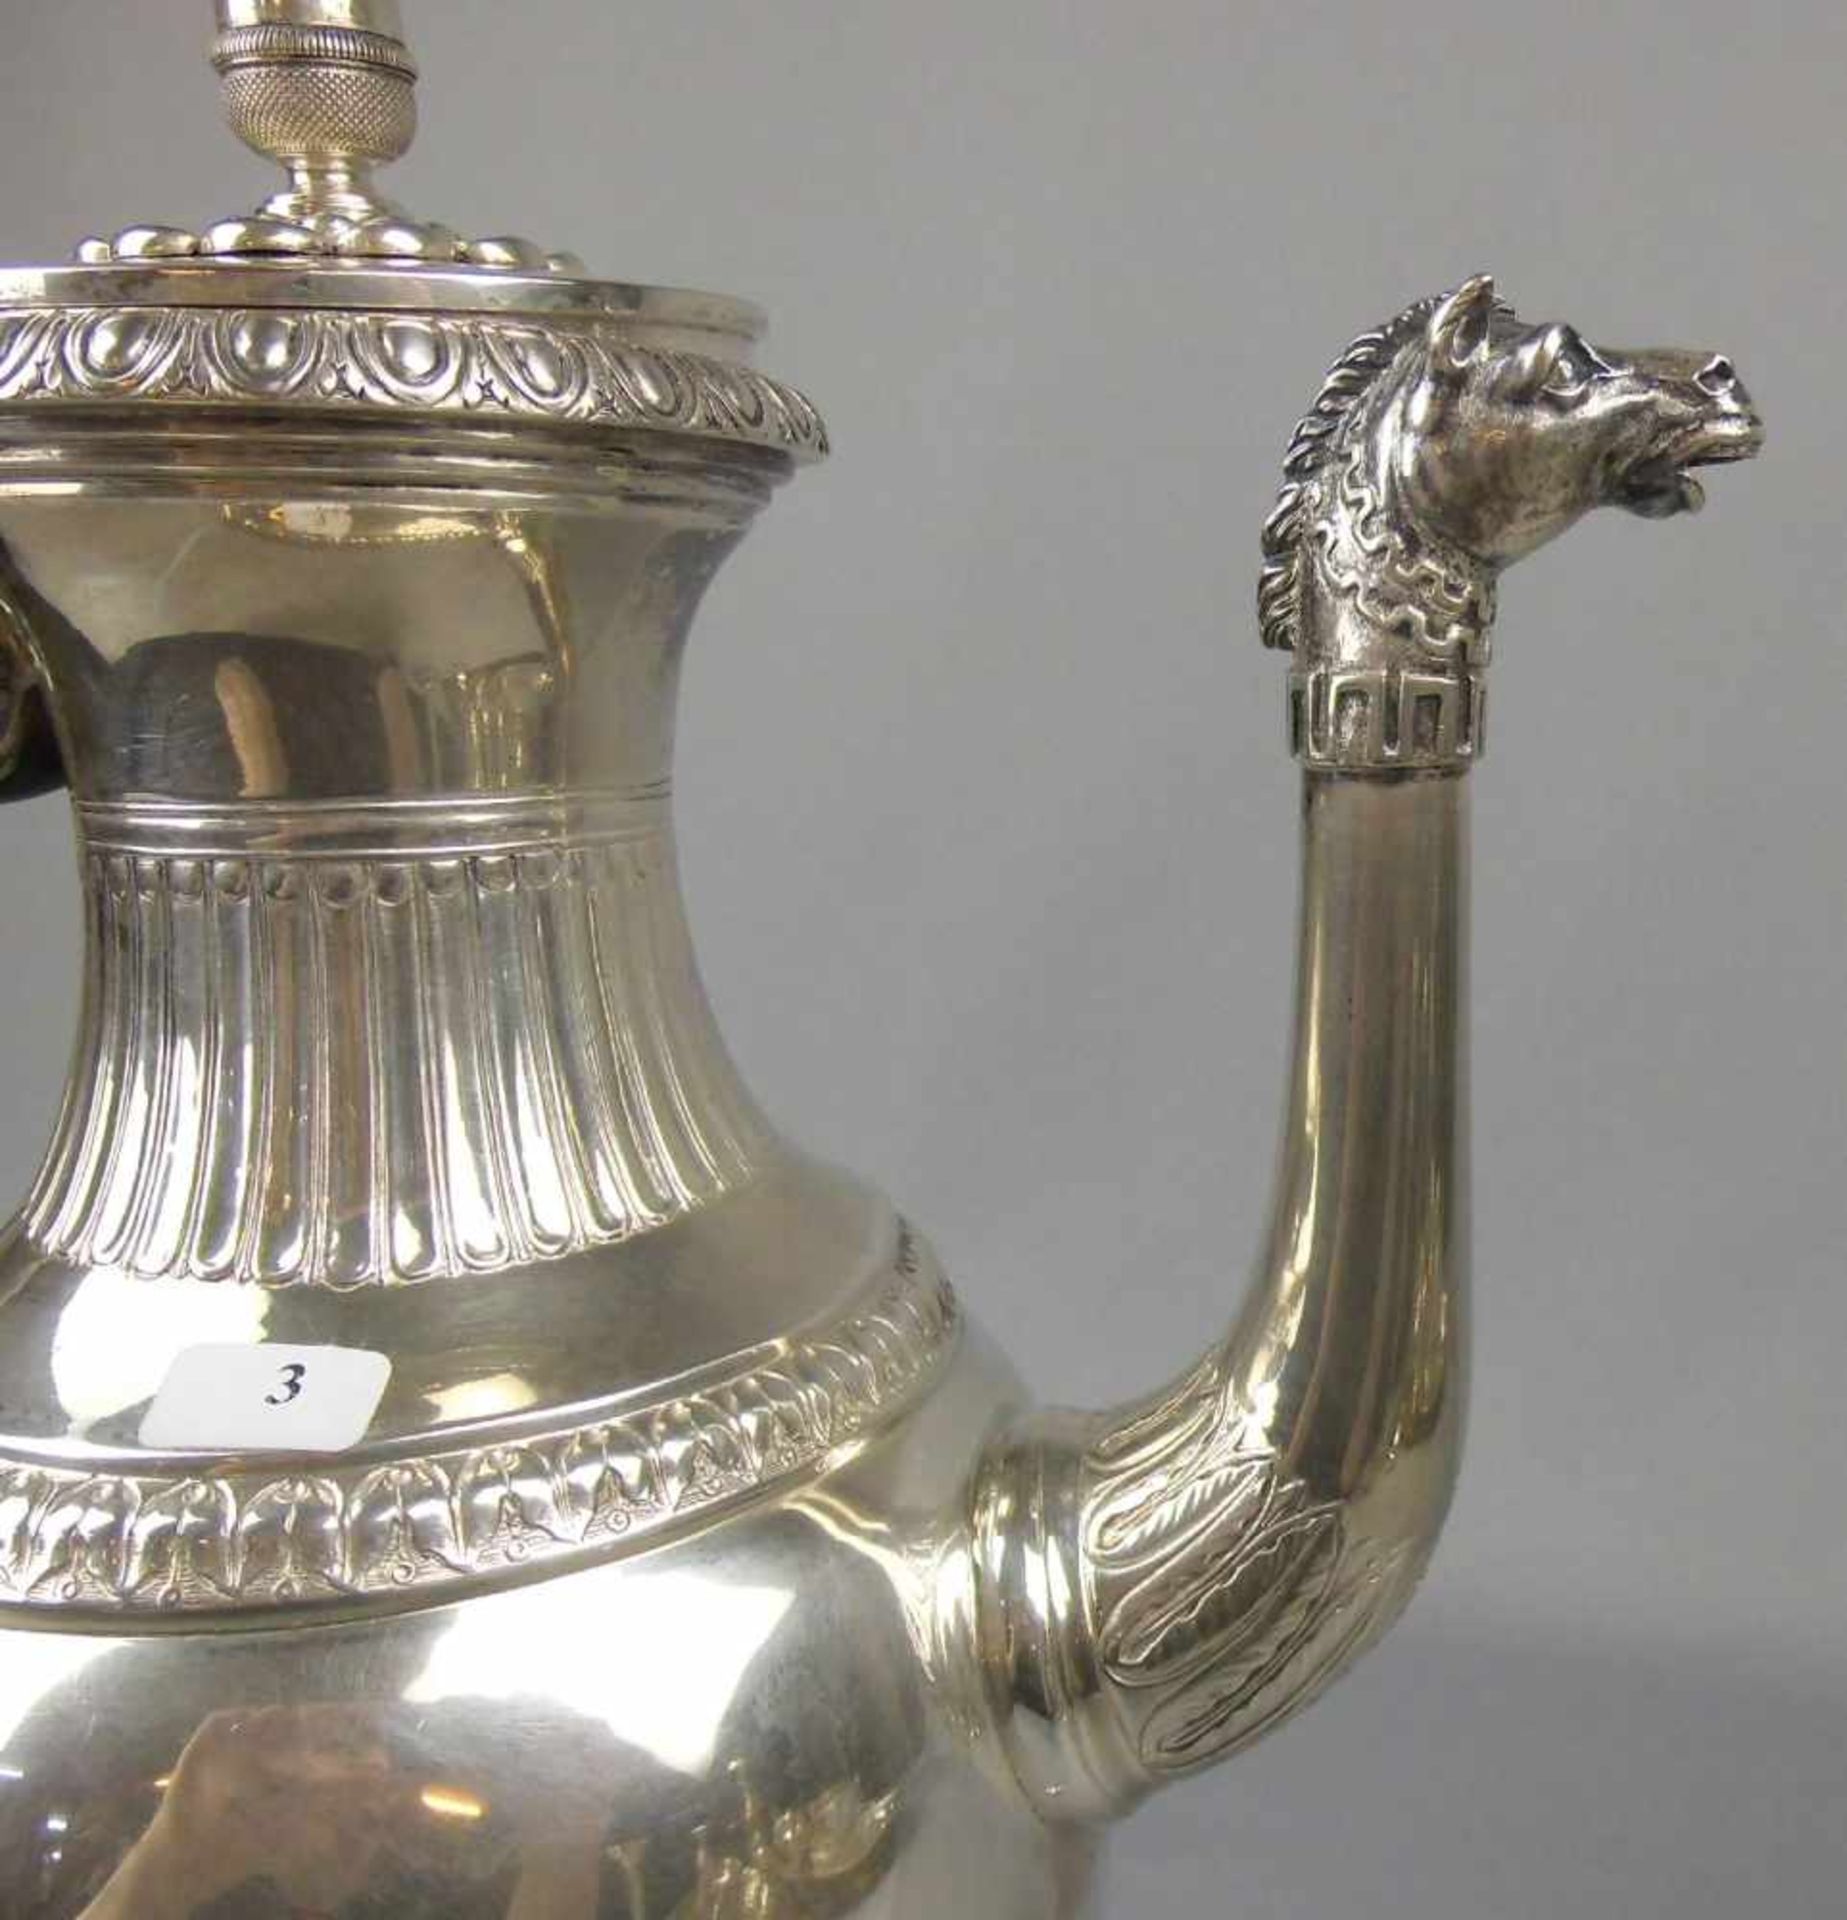 PRÄCHTIGE EMPIRE KAFFEE - KANNE AUS ADELSBESITZ / silver empire coffee pot from nobility estates, - Bild 13 aus 15